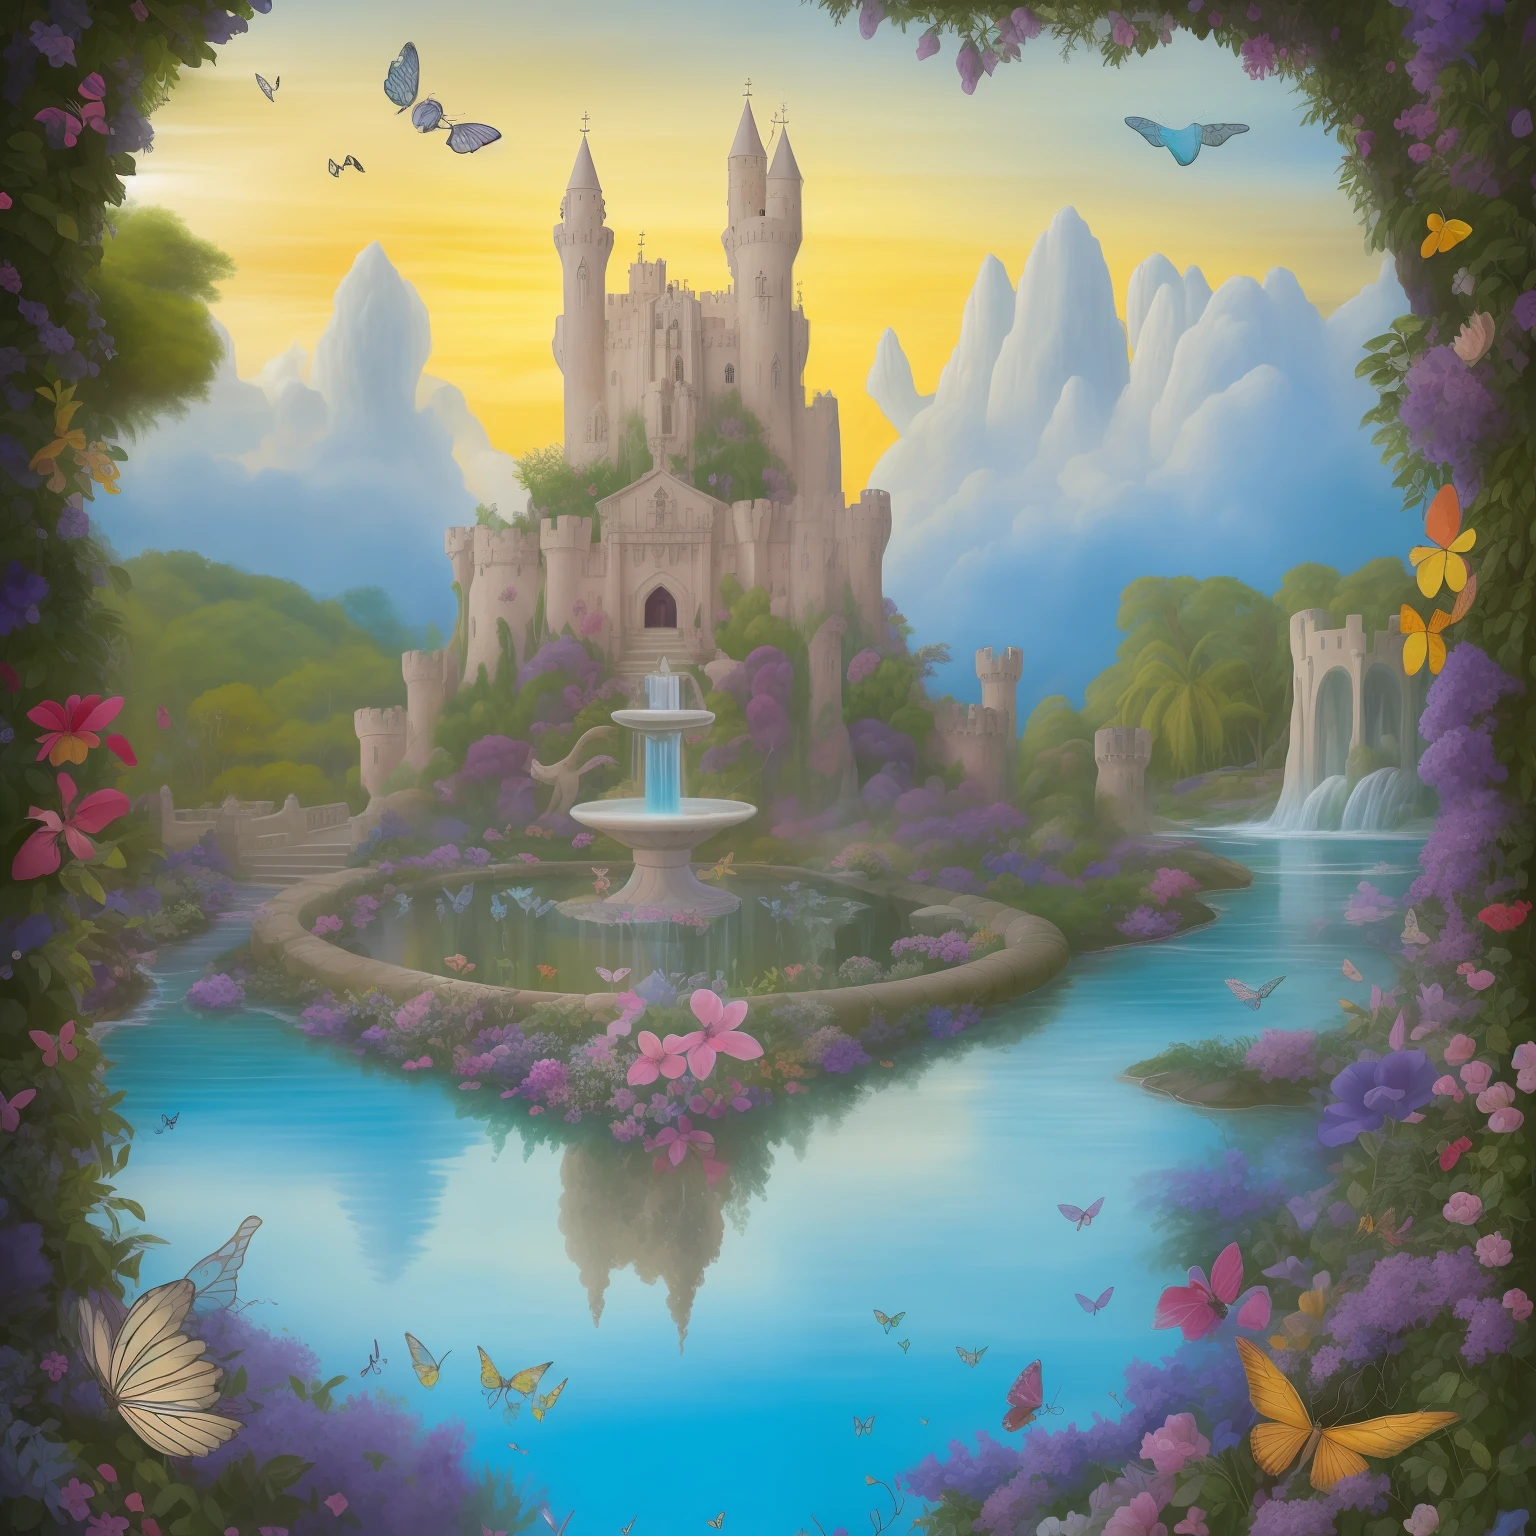 "Imagine uma obra de arte que transporta os observadores para um reino de maravilhas. Uma cena mágica e encantadora se desenrola diante de seus olhos, com uma paisagem exuberante e cheia de vida. No horizonte, um majestoso castelo de contos de fadas se ergue, com torres espirais, ameias elaboradas e vitrais brilhantes que refletem as cores do arco-íris.

Ao redor do castelo, Um exuberante, flores de jardim exótico, repleto de flores exuberantes e fauna encantadora. Borboletas multicoloridas dançam graciosamente pelo ar, enquanto os pássaros cantam melodias celestiais entre os galhos de árvores centenárias.

Um rio serpenteante atravessa a paisagem, suas águas cristalinas refletindo o sol. Pontes de pedra arqueadas conectam as margens, adicionando um toque pitoresco à cena.

Na frente do castelo, Uma fonte esculpida em detalhes intrincados jorra água cristalina em cascata, cercado por graciosas estátuas de seres mitológicos e criaturas fantásticas.

O céu é pintado em tons de ouro, rosa e azul, enquanto nuvens fofas e brancas flutuam suavemente, emoldurando a cena como uma obra-prima celestial.

Esta obra de arte é um convite a um mundo de maravilhas, onde a imaginação se torna realidade e os sonhos ganham vida. Cada detalhe é cuidadosamente trabalhado para encantar e cativar o coração e a mente do espectador, transportando-o para um universo de beleza e encantamento."